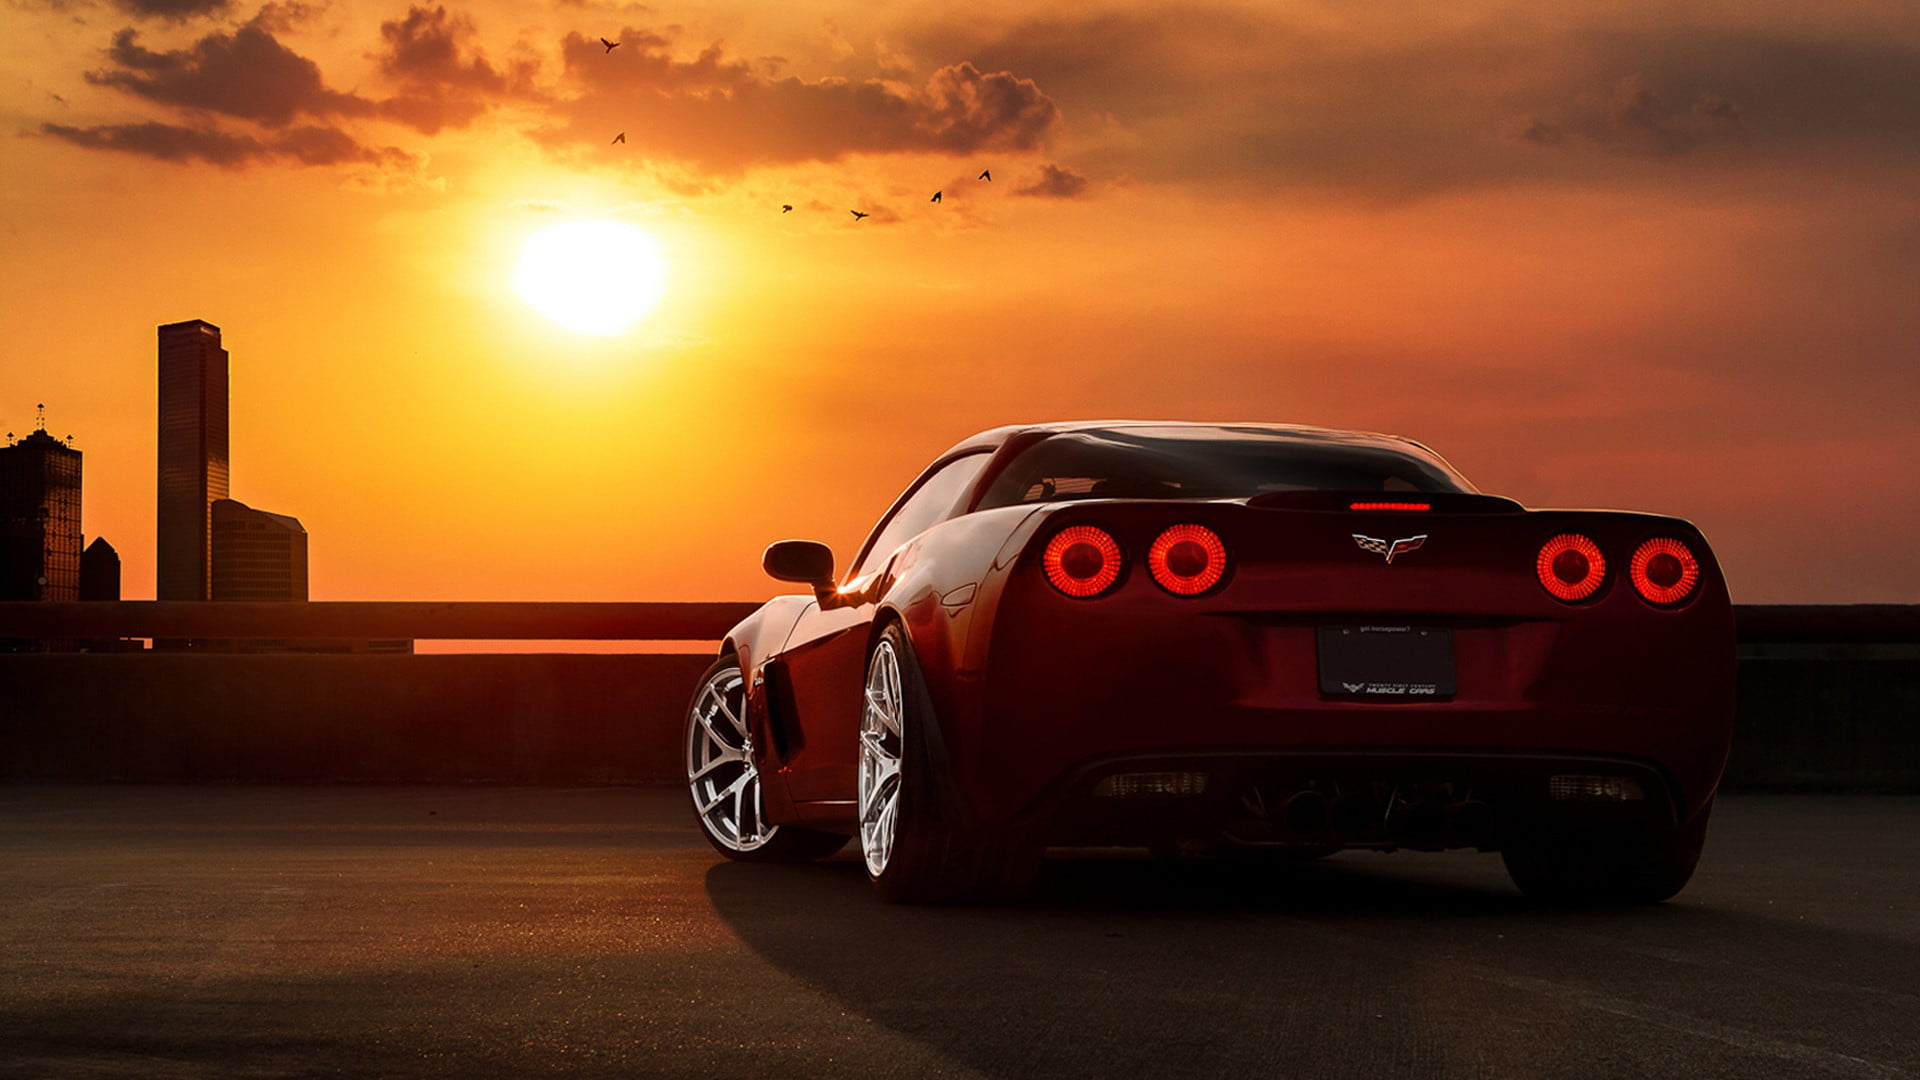 red Chevrolet Corvet, car, sunset, Corvette, transportation, mode of transportation